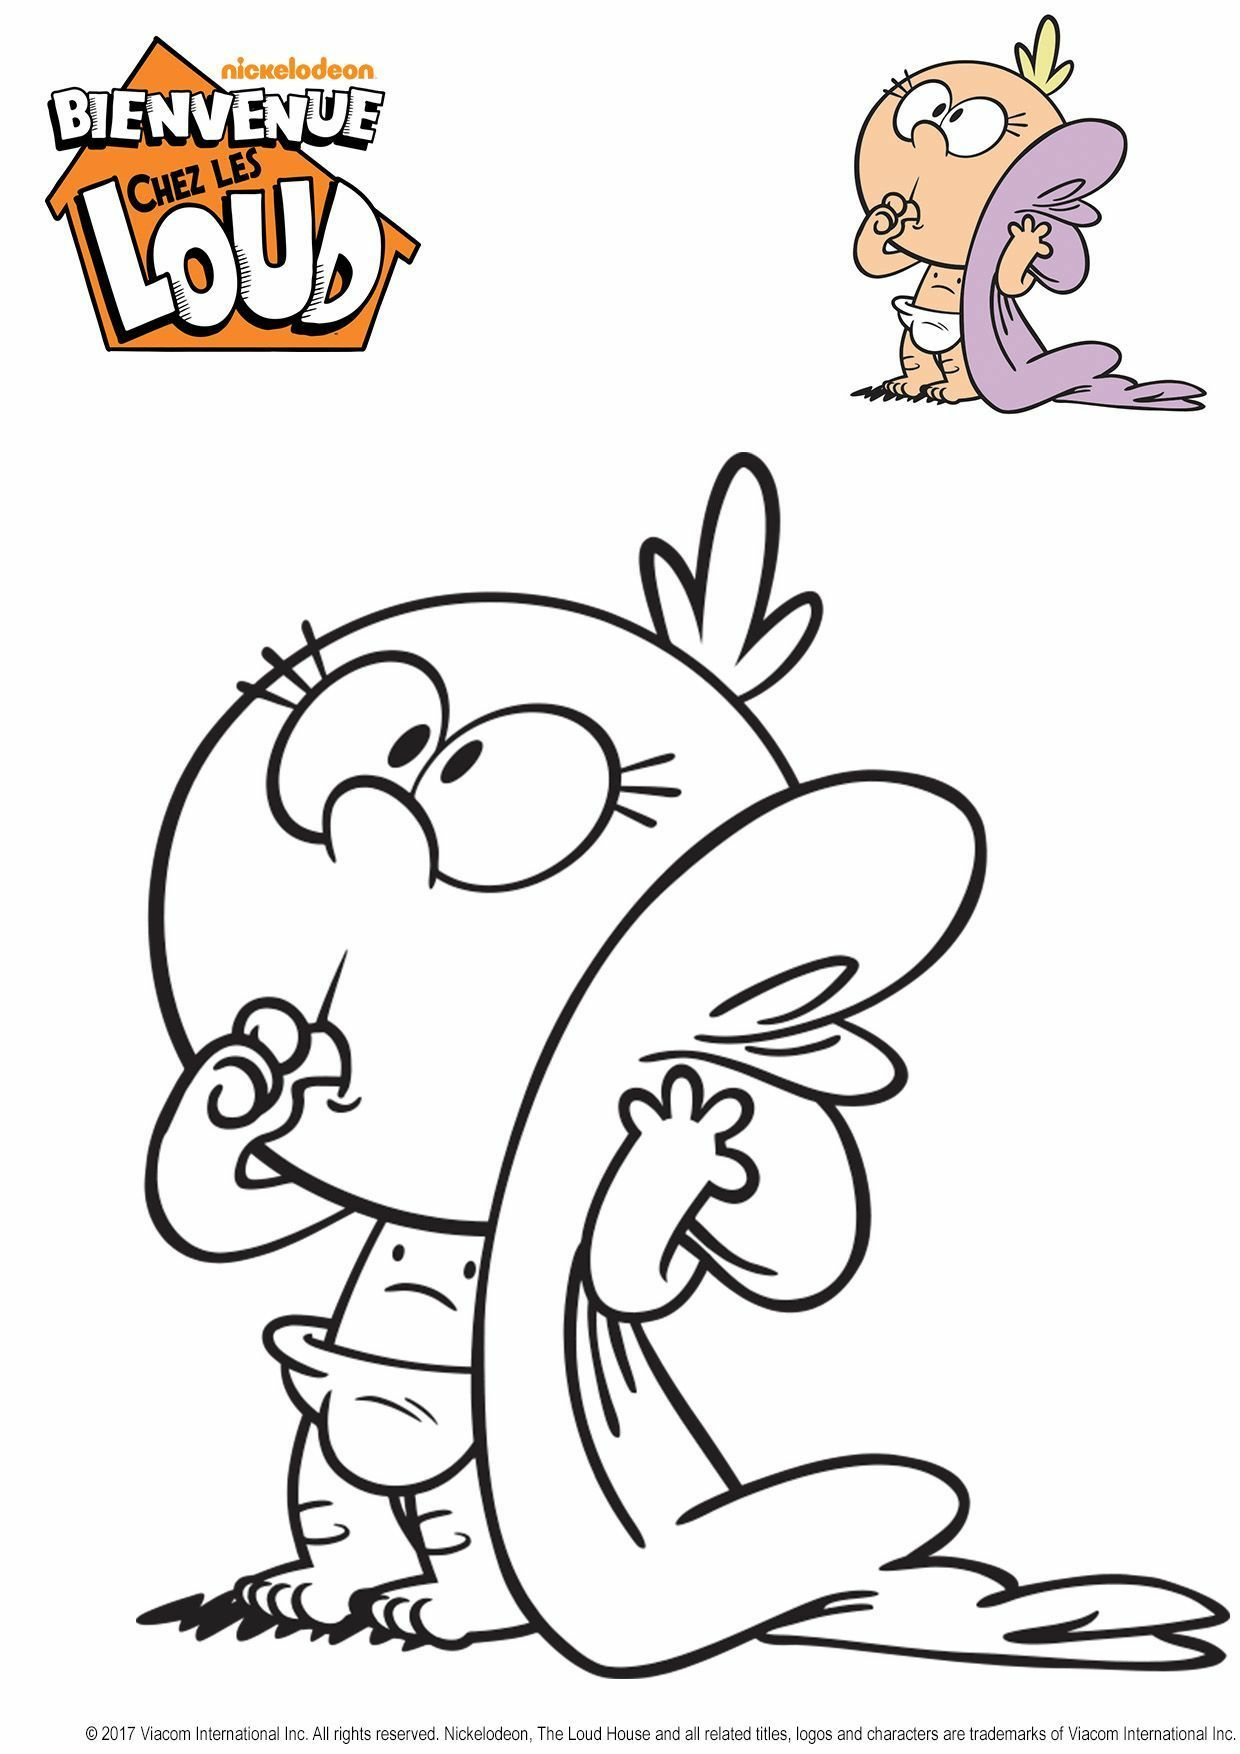   Gulli Lily de Bienvenue chez les Loud, un personnage de dessin animé 